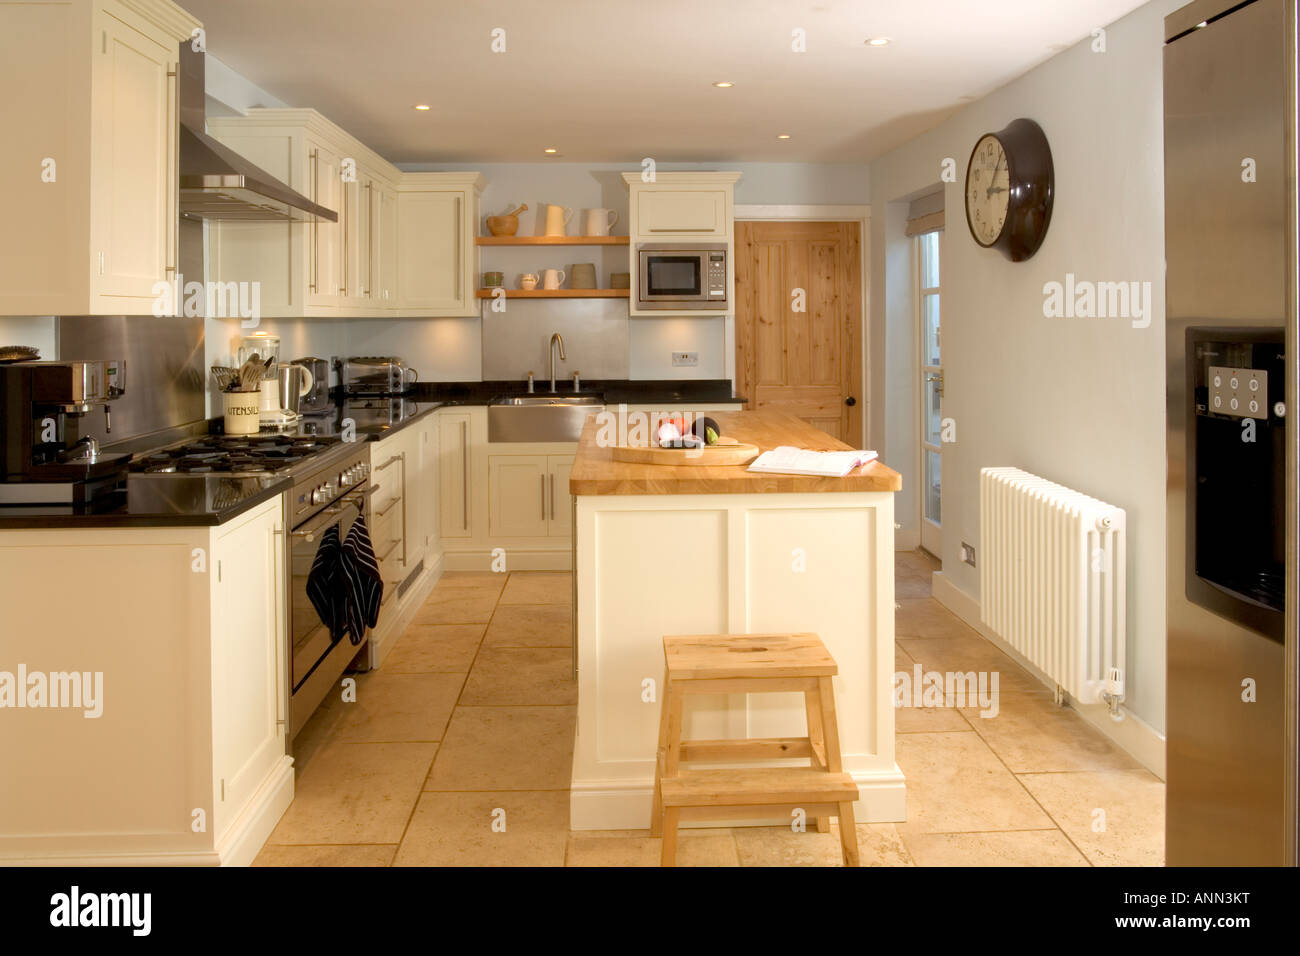 Home Interior, kleine moderne Einbauküche mit Kochinsel. Stockfoto